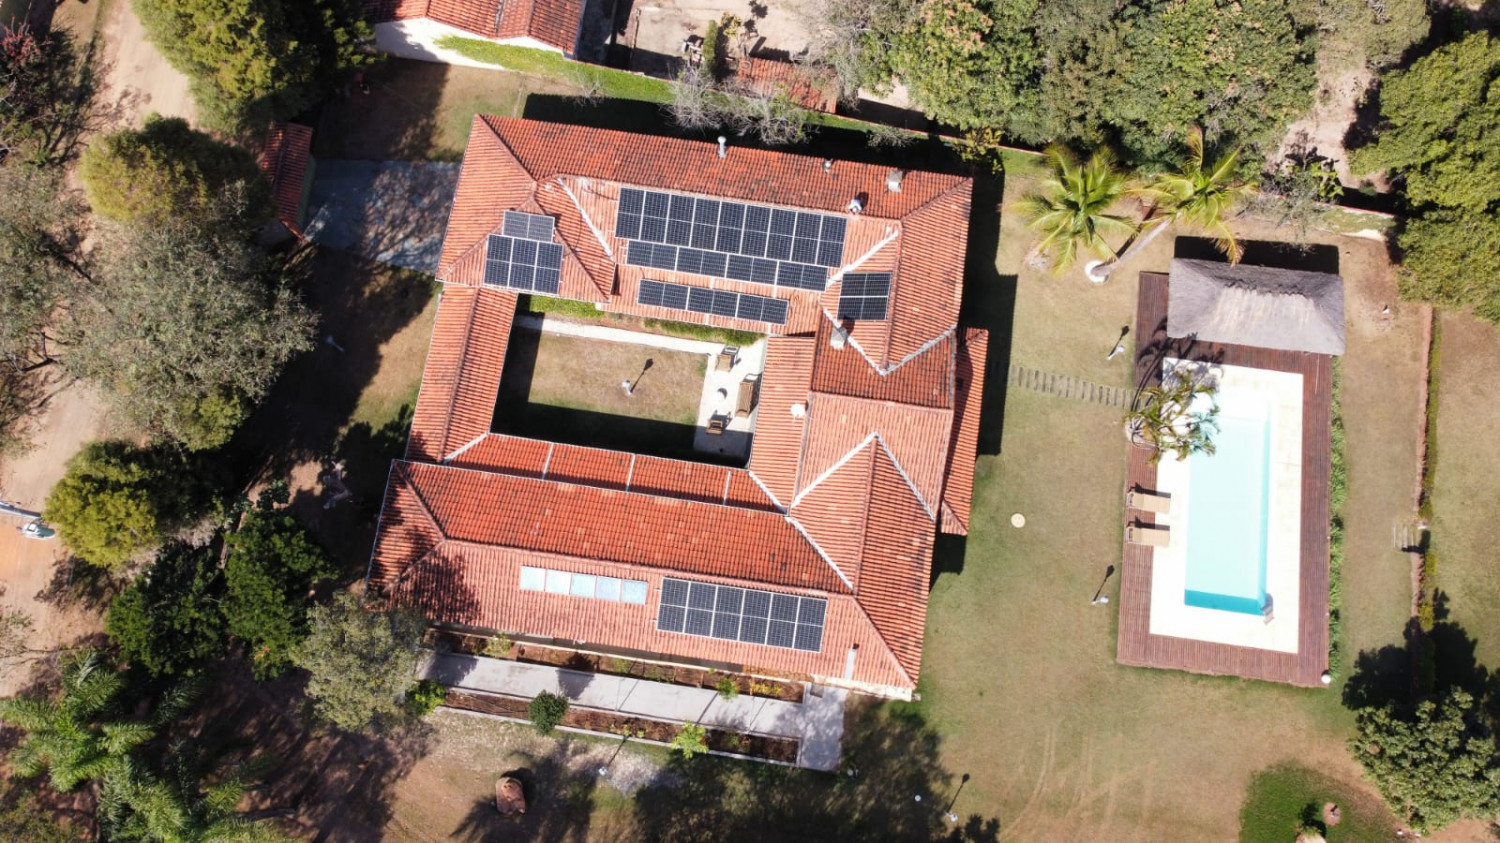 Sistema Fotovoltaico - Residencial Sete Quedas - Itu